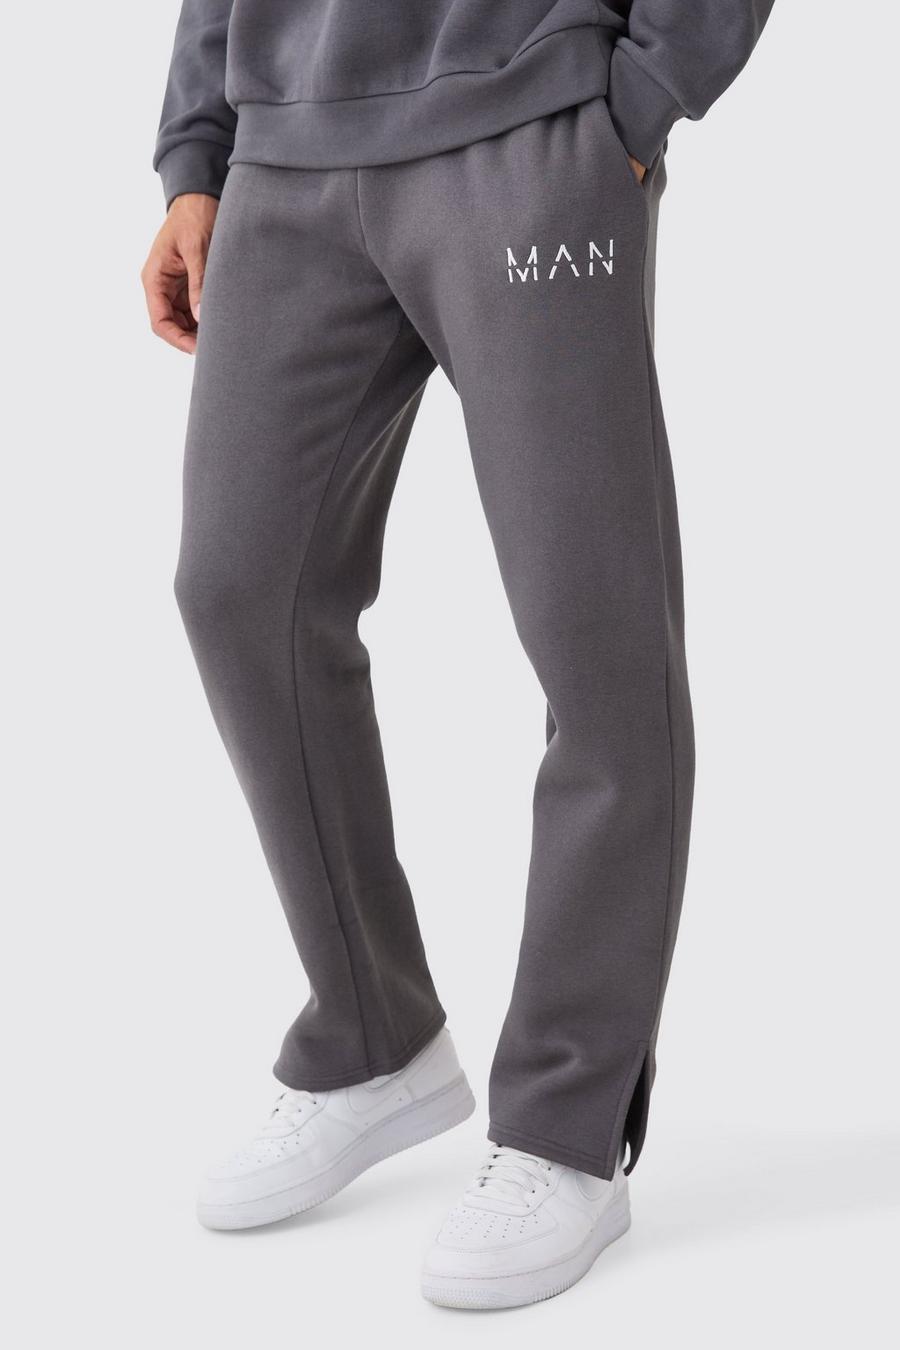 Pantaloni tuta Man con spacco sul fondo, Charcoal